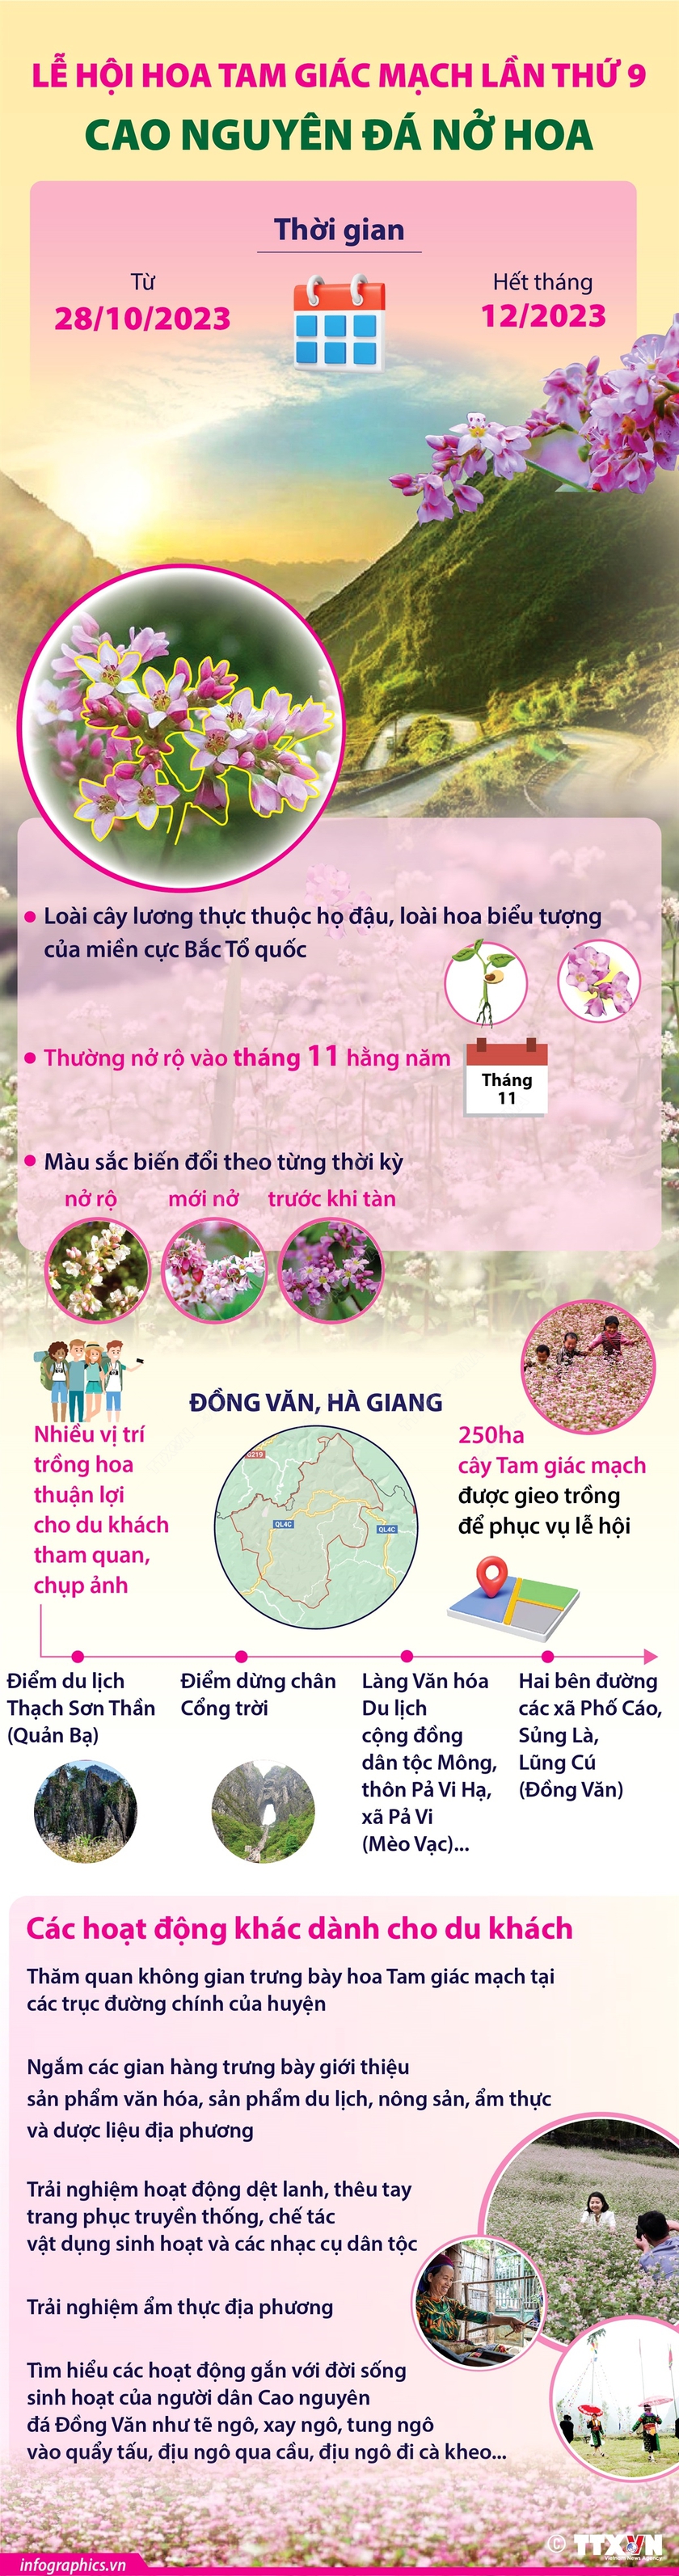 Hà Giang: Cao nguyên đá Đồng Văn nhận danh hiệu Công viên địa chất toàn cầu UNESCO, khai mạc Lễ hội hoa Tam giác mạch - Ảnh 6.